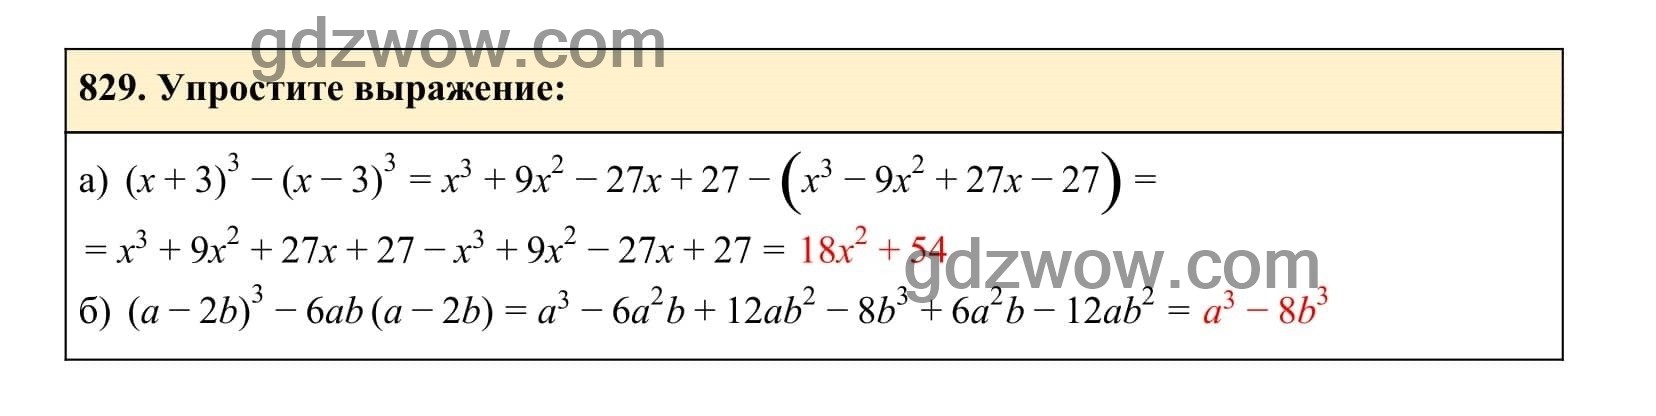 Упражнение 829 - ГДЗ по Алгебре 7 класс Учебник Макарычев (решебник) - GDZwow